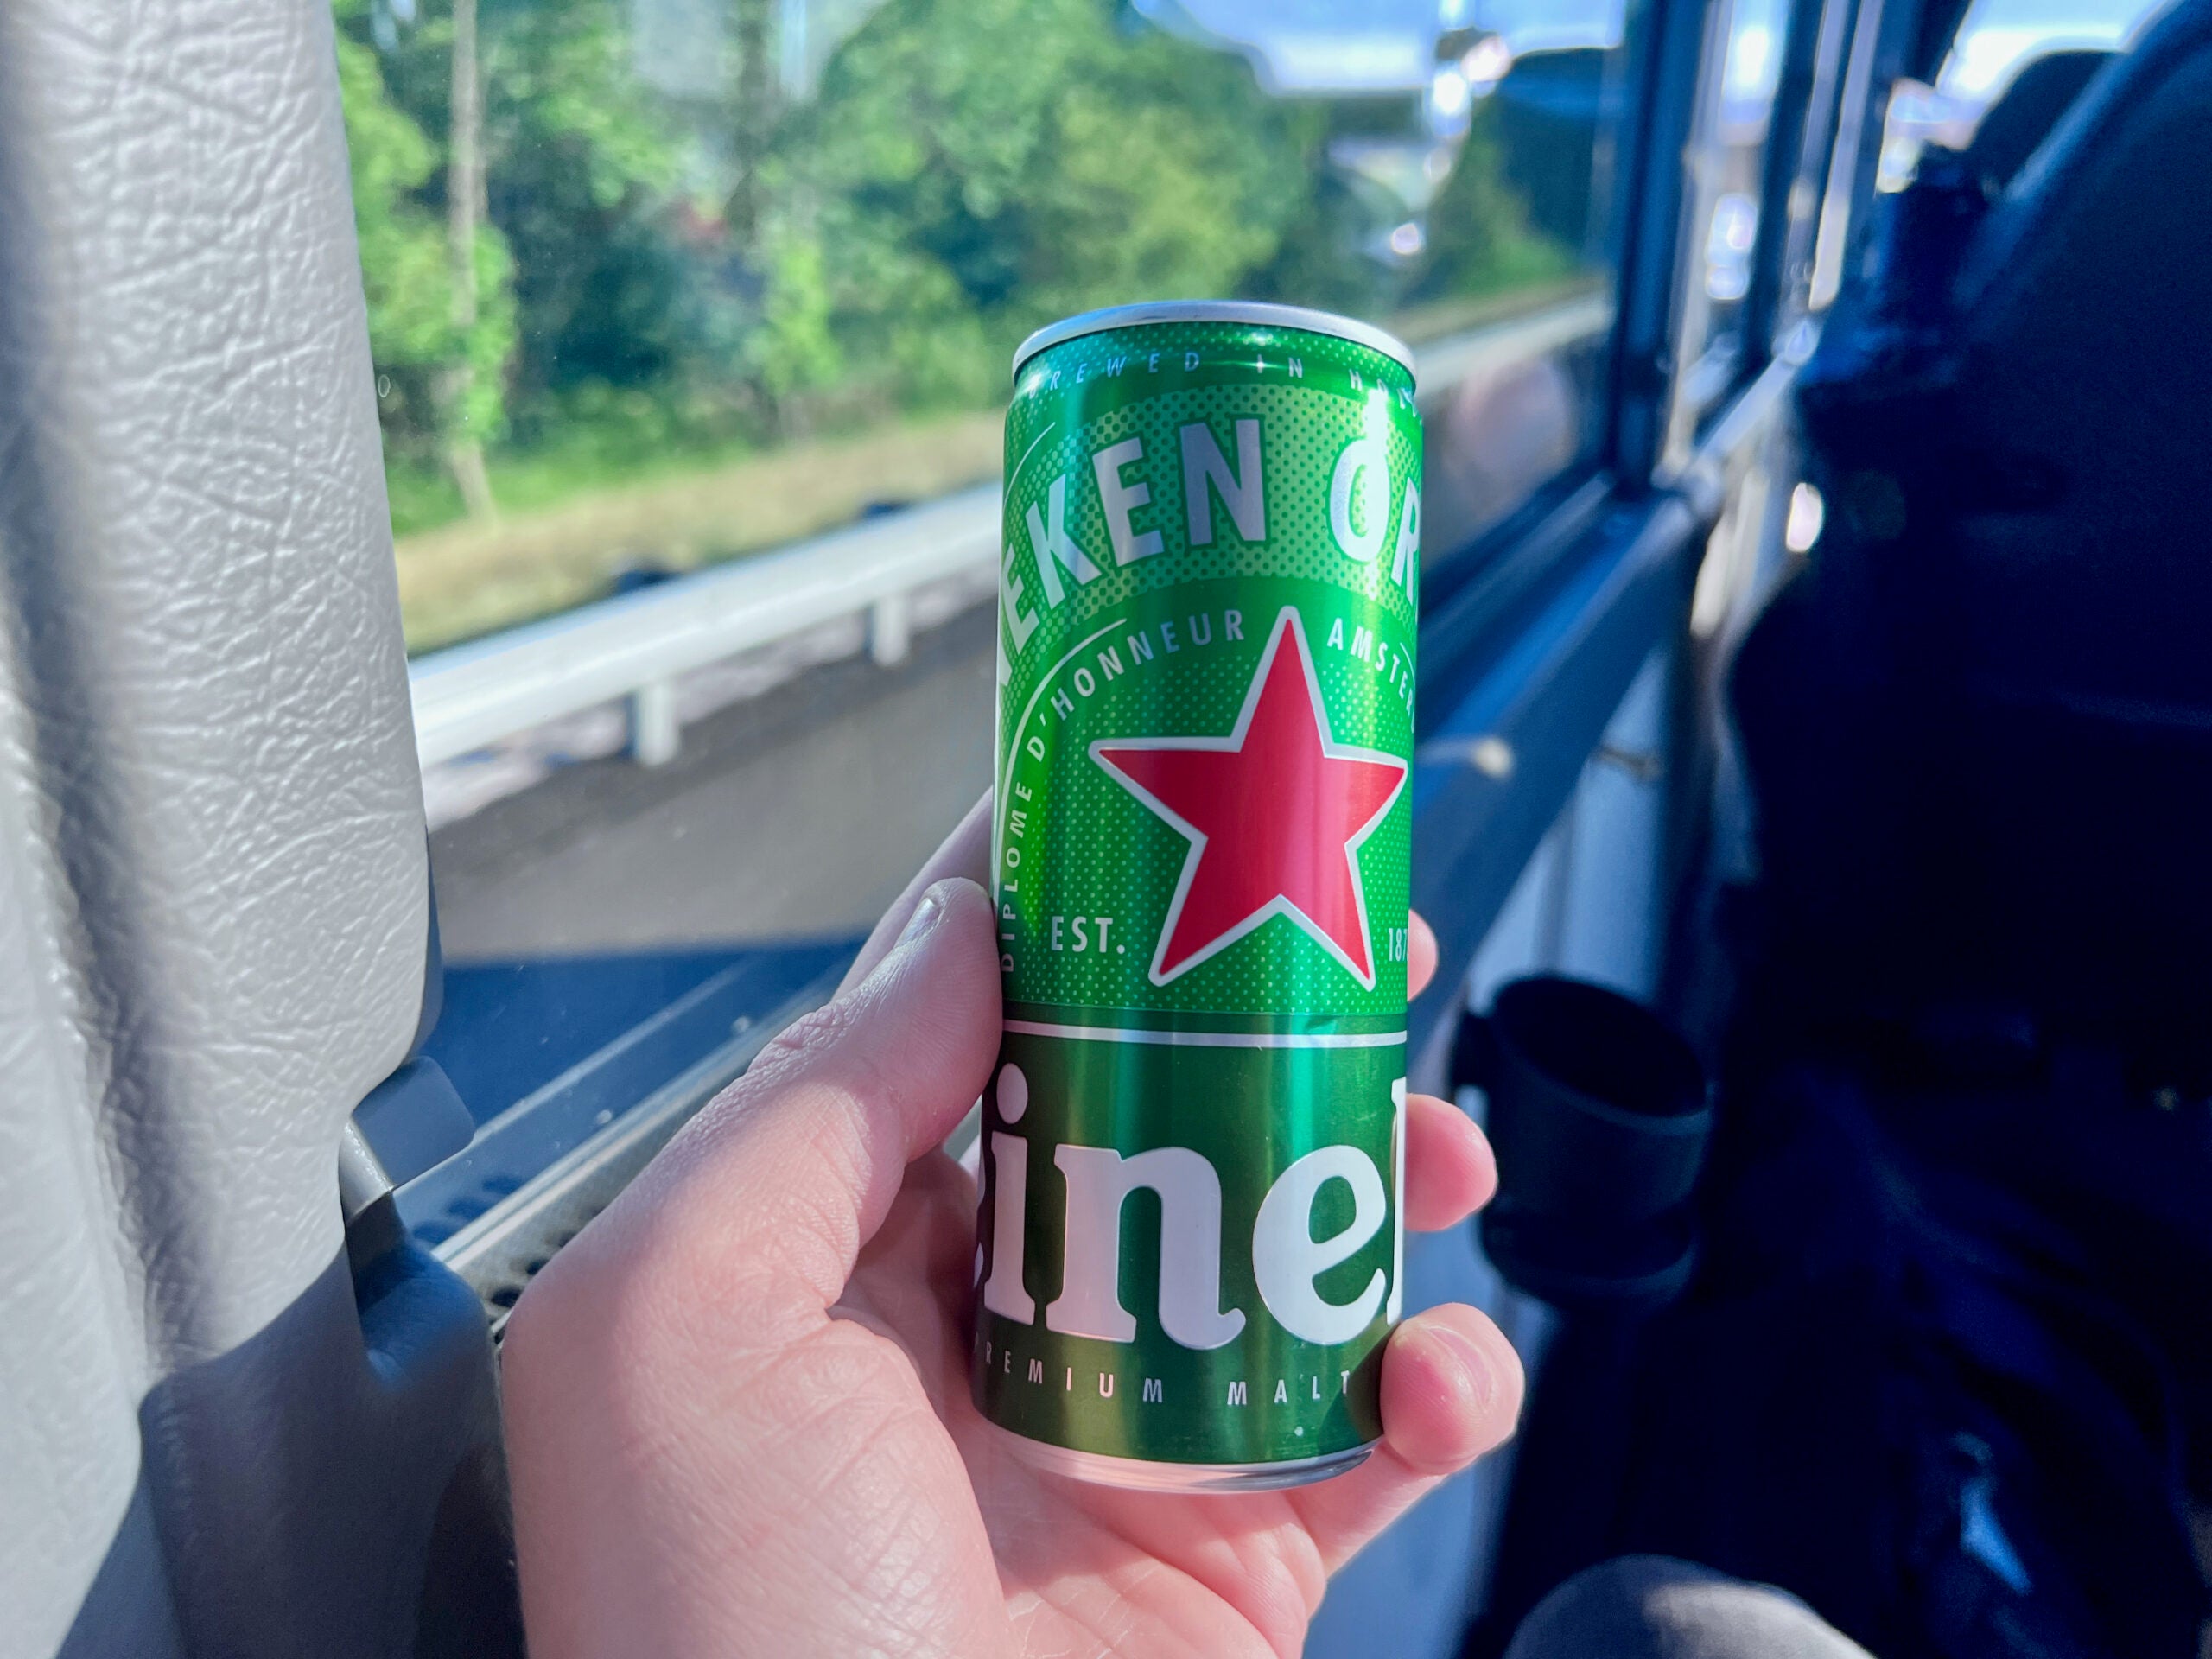 Small can of Heineken beer